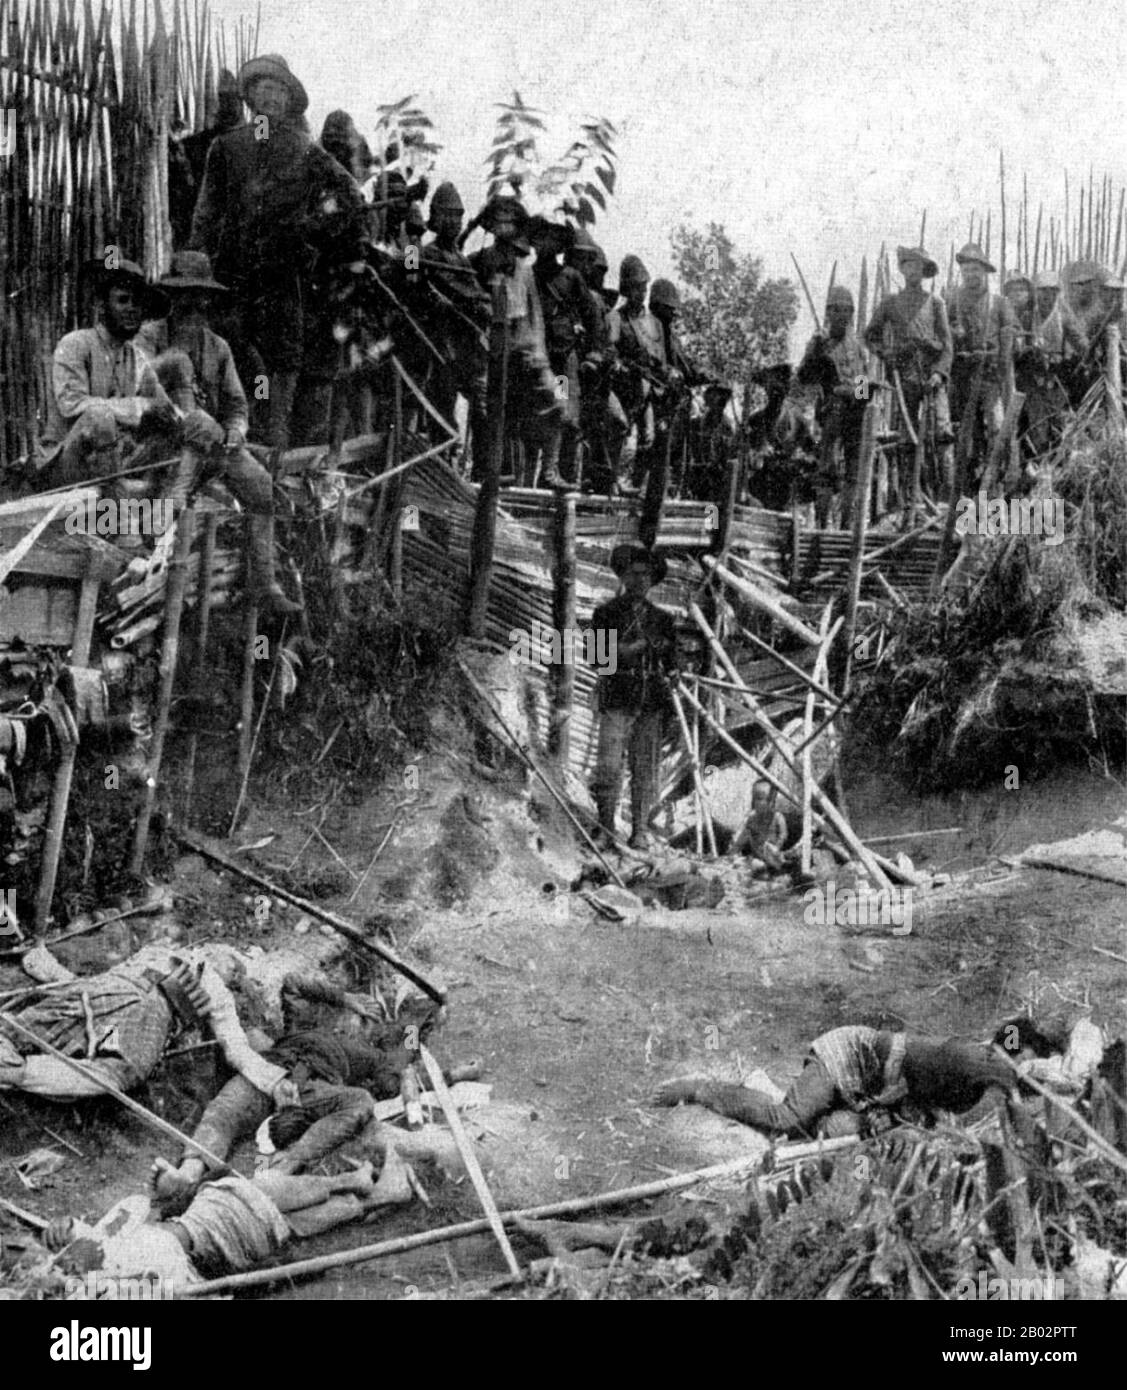 La guerre d'Aceh, également connue sous le nom de guerre néerlandaise ou de guerre Infidale (1873–1914), était un conflit militaire armé entre le Sultanat d'Aceh et les Pays-Bas, déclenché par des discussions entre les représentants d'Aceh et du Royaume-Uni à Singapour au début de 1873. La guerre faisait partie d'une série de conflits à la fin du XIXe siècle qui ont consolidé la domination néerlandaise sur l'Indonésie moderne. La campagne Gajo, Alas et Batak de la guerre d'Aceh en 1904 est surtout rappelée pour son craquage dur sur les dernières poches de résistance d'Acehnese et de Batak. En particulier la bataille à Kuta Reh Banque D'Images